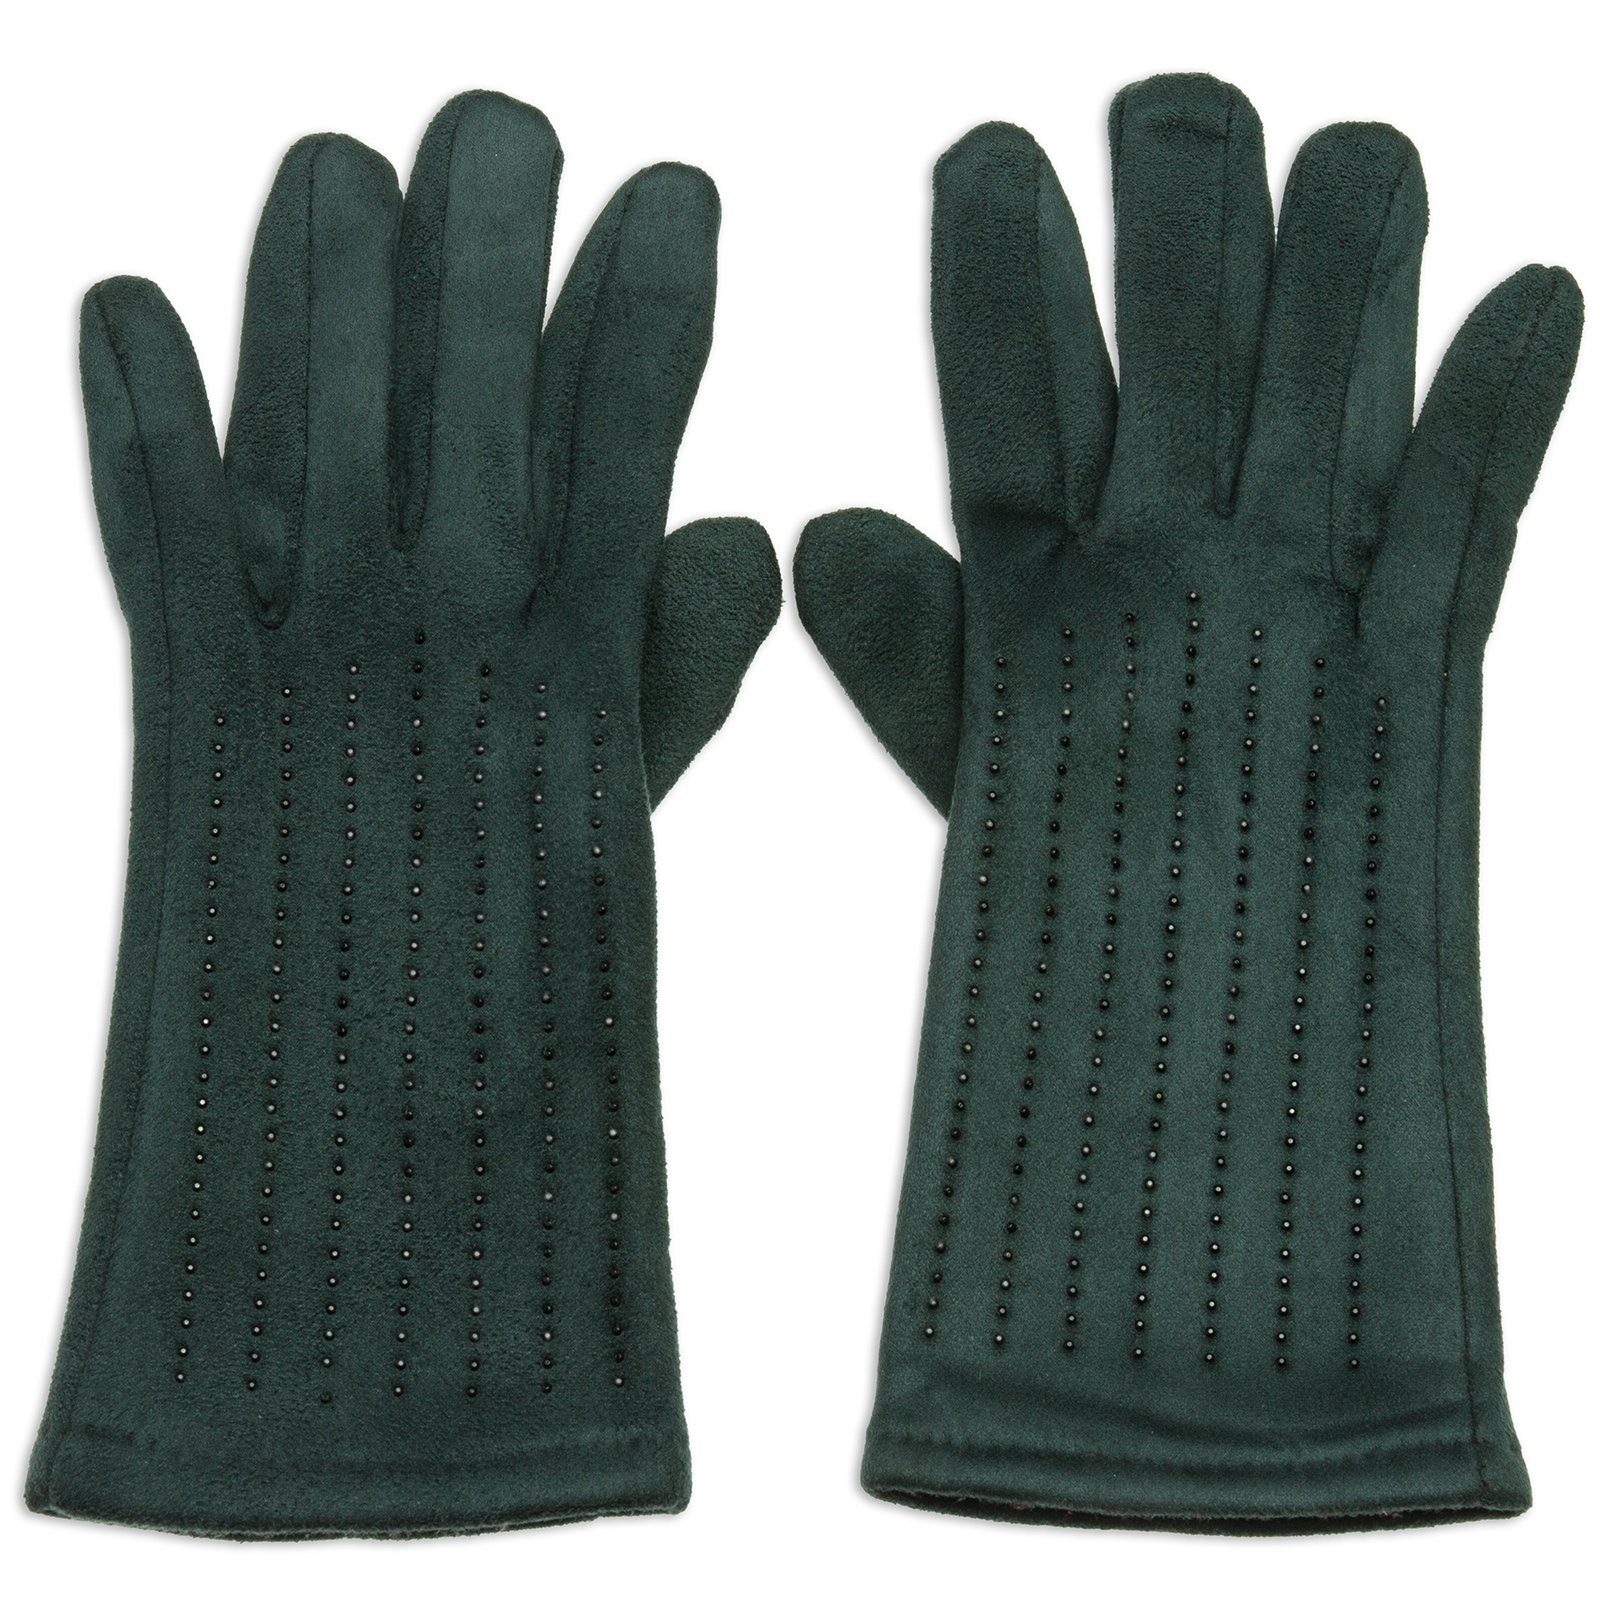 Caspar Strickhandschuhe GLV011 klassisch elegante Damen Handschuhe mit Strass Dekor und Touchscreen Funktion grün